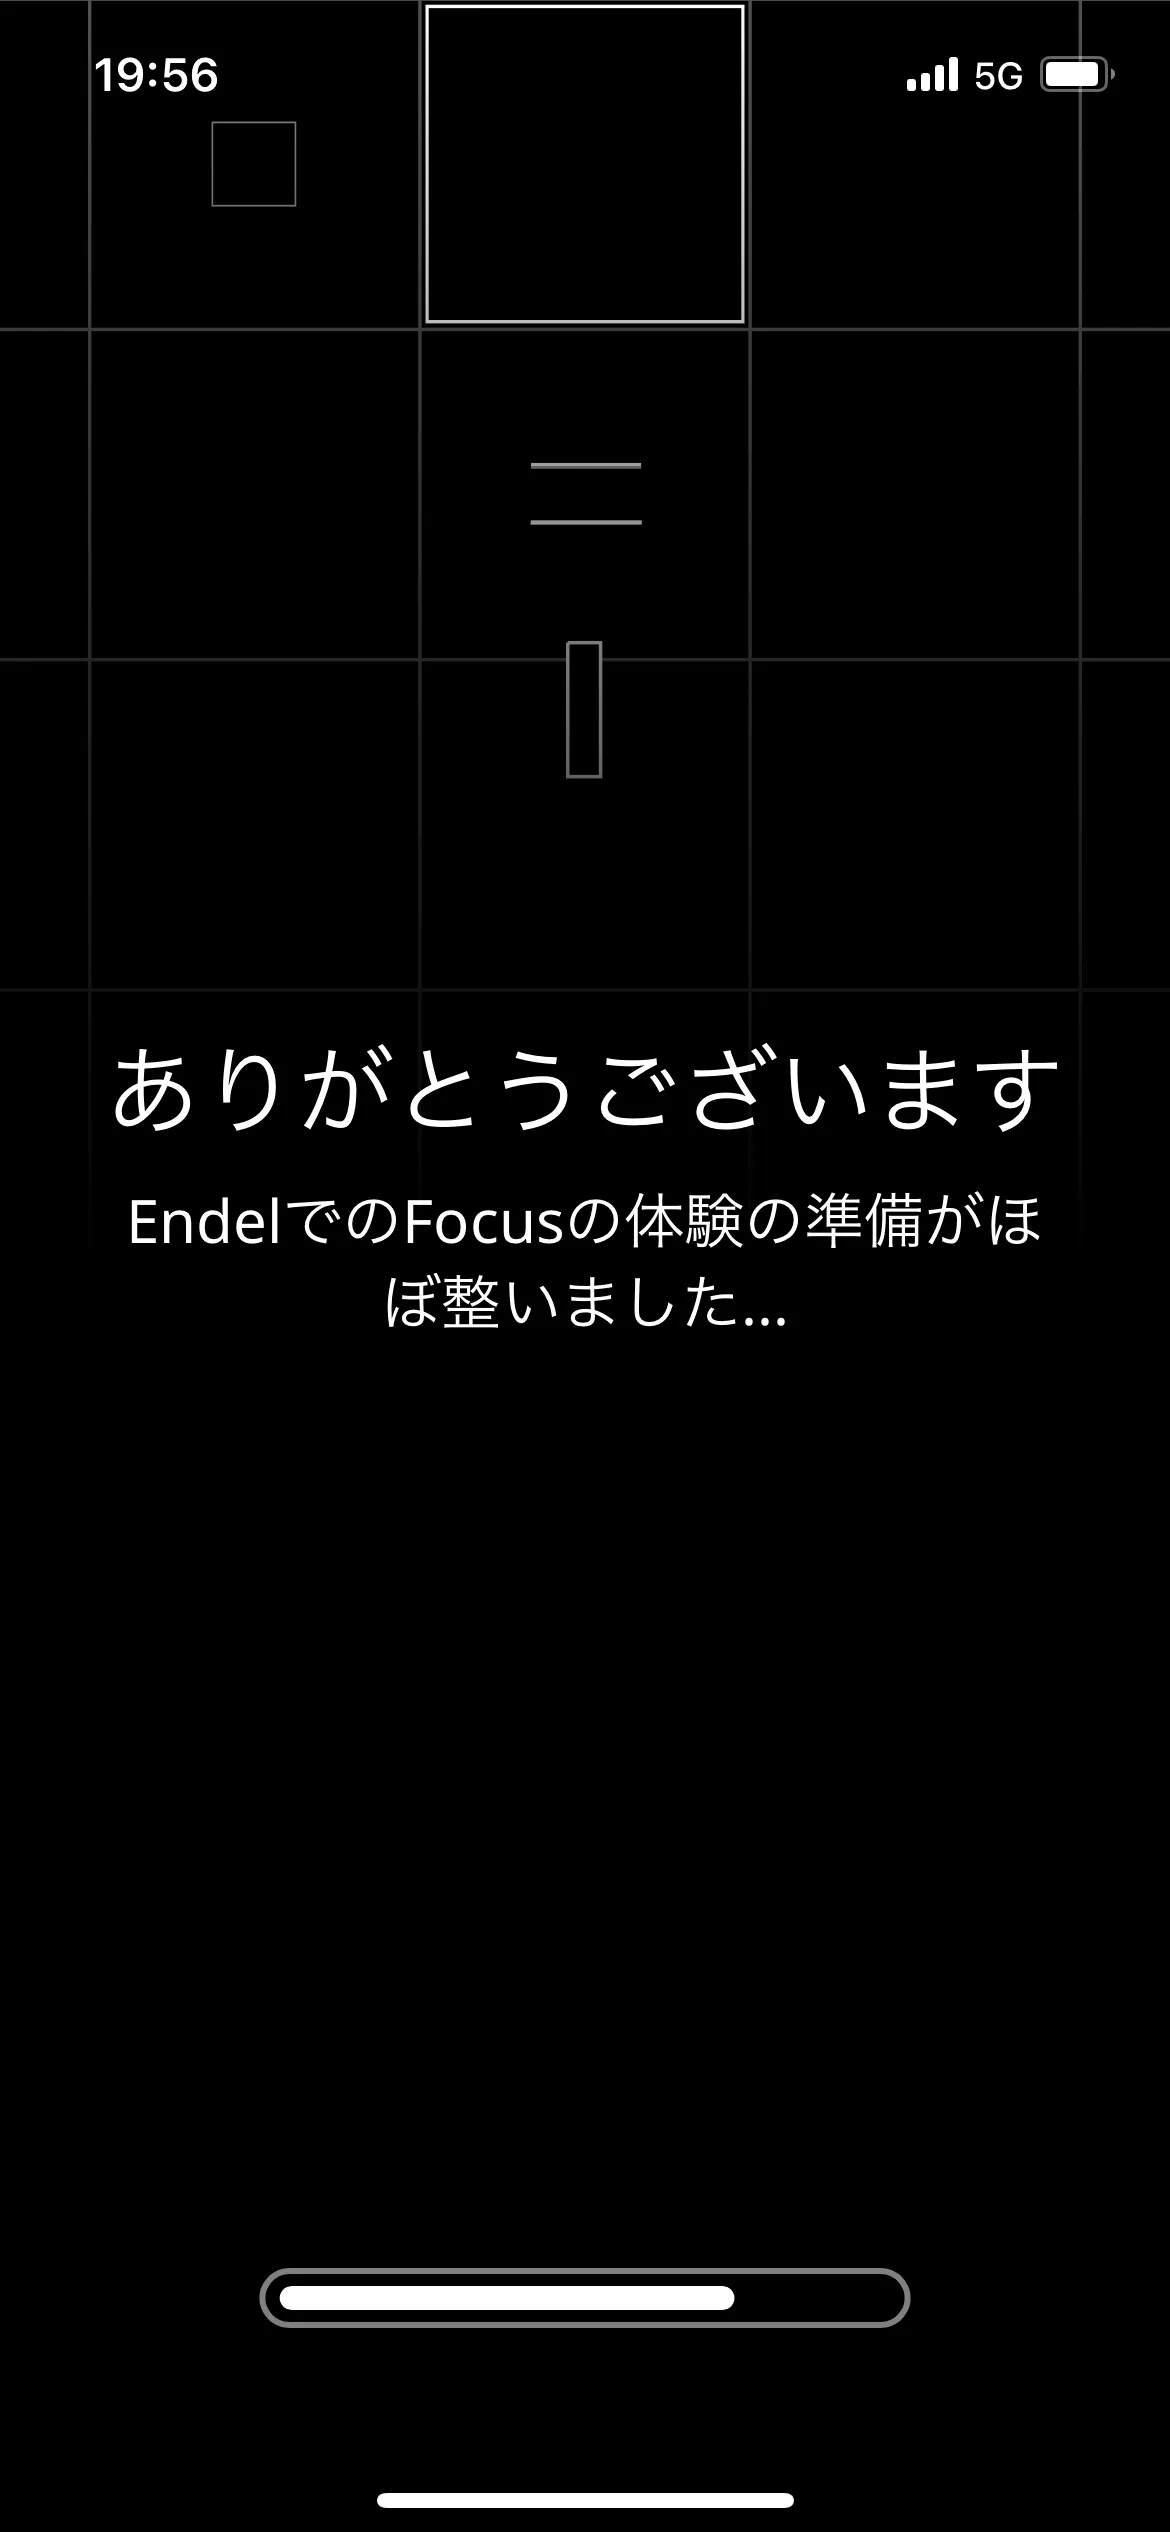 Endel オンボーディング screen